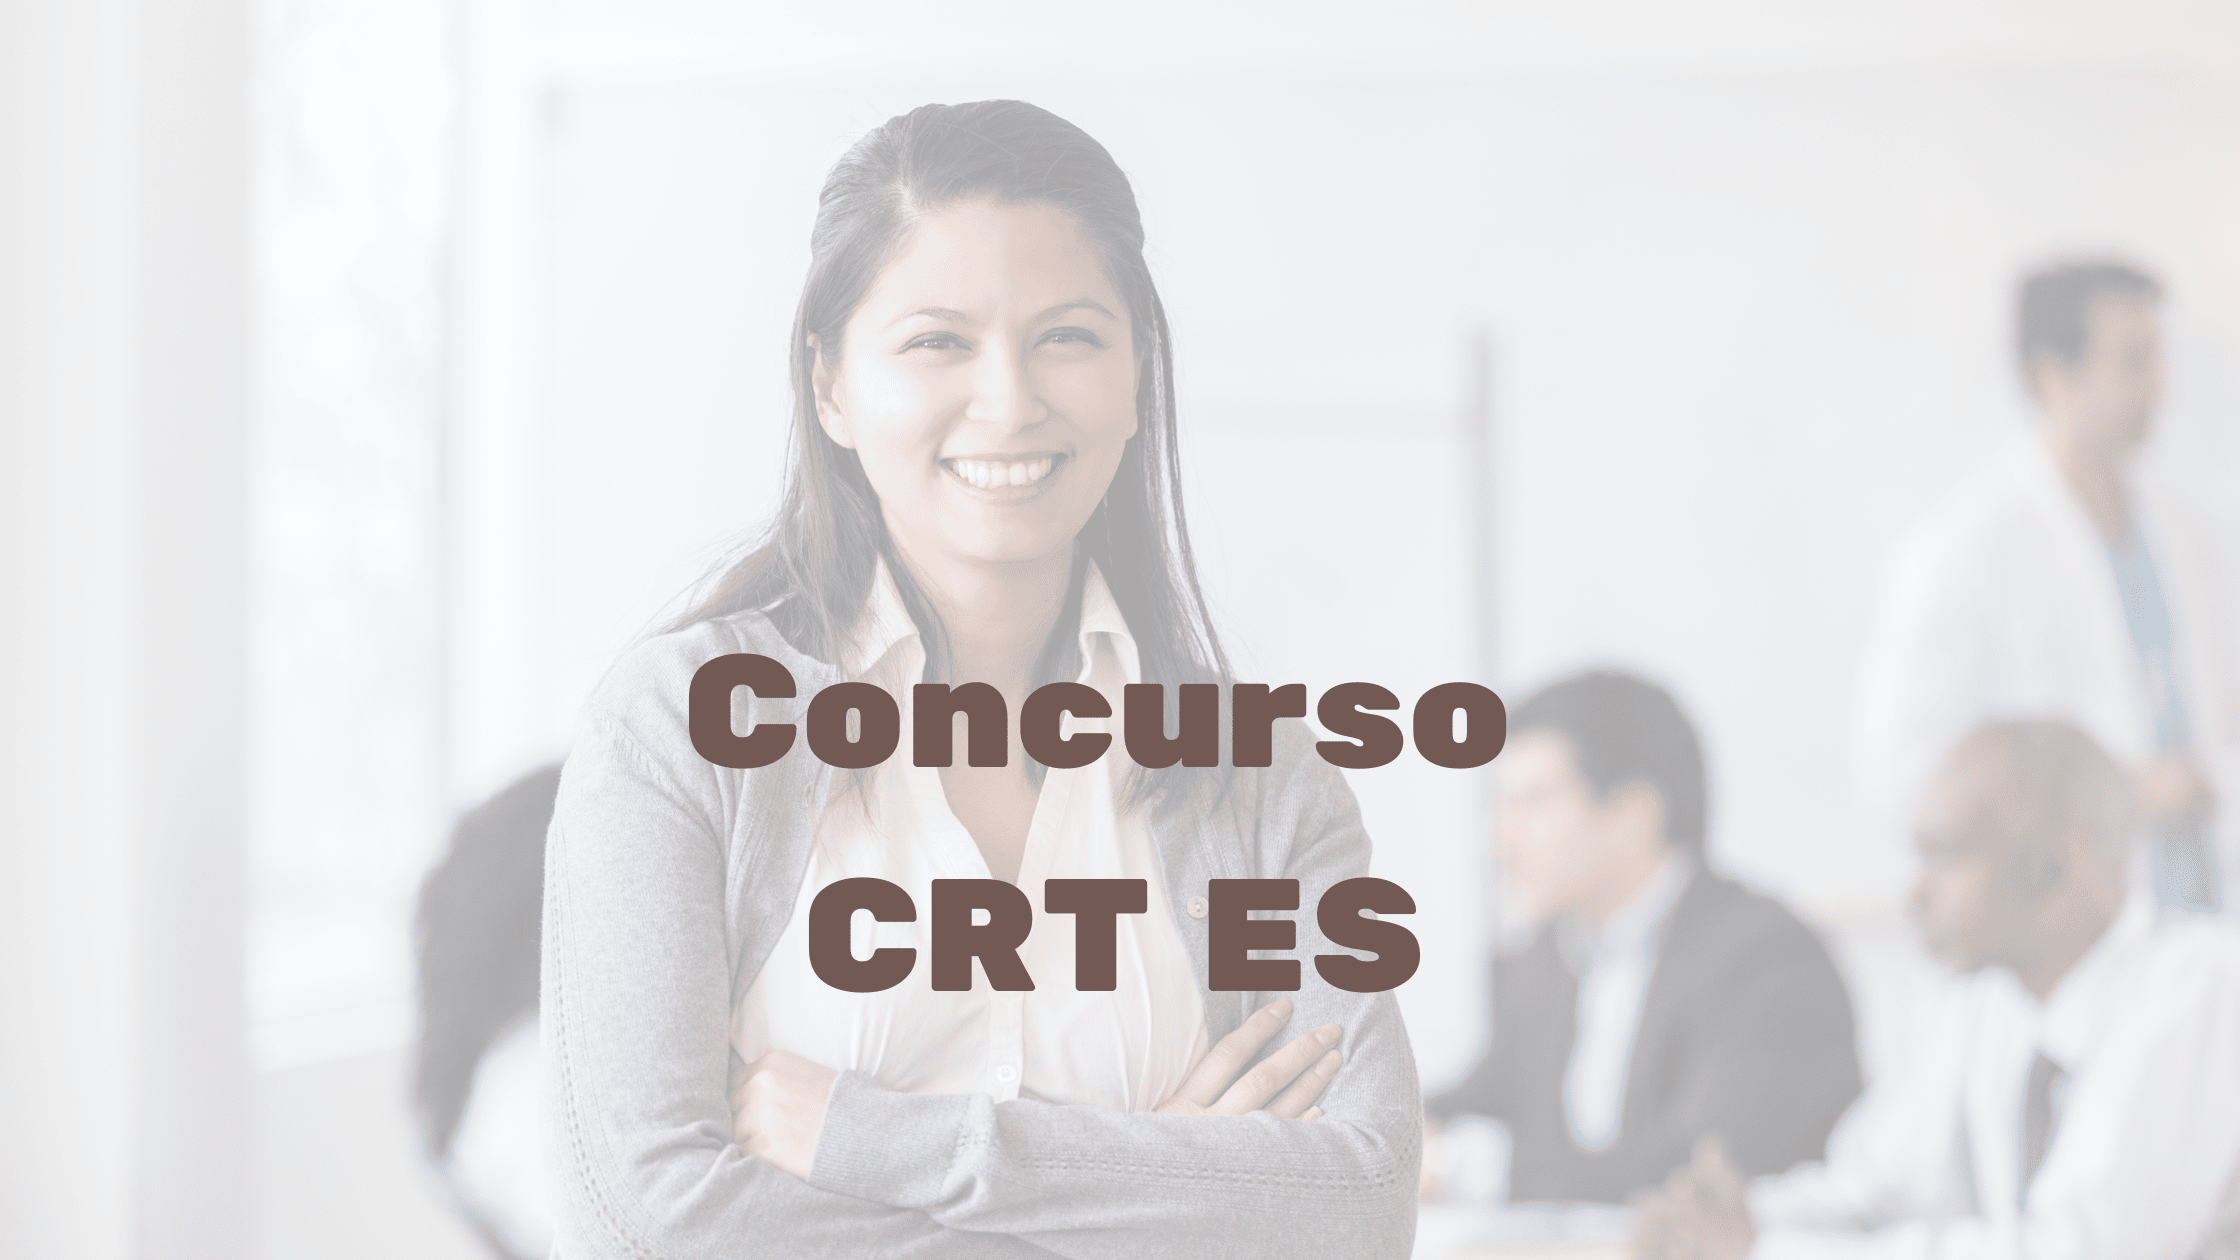 Concurso CRT ES